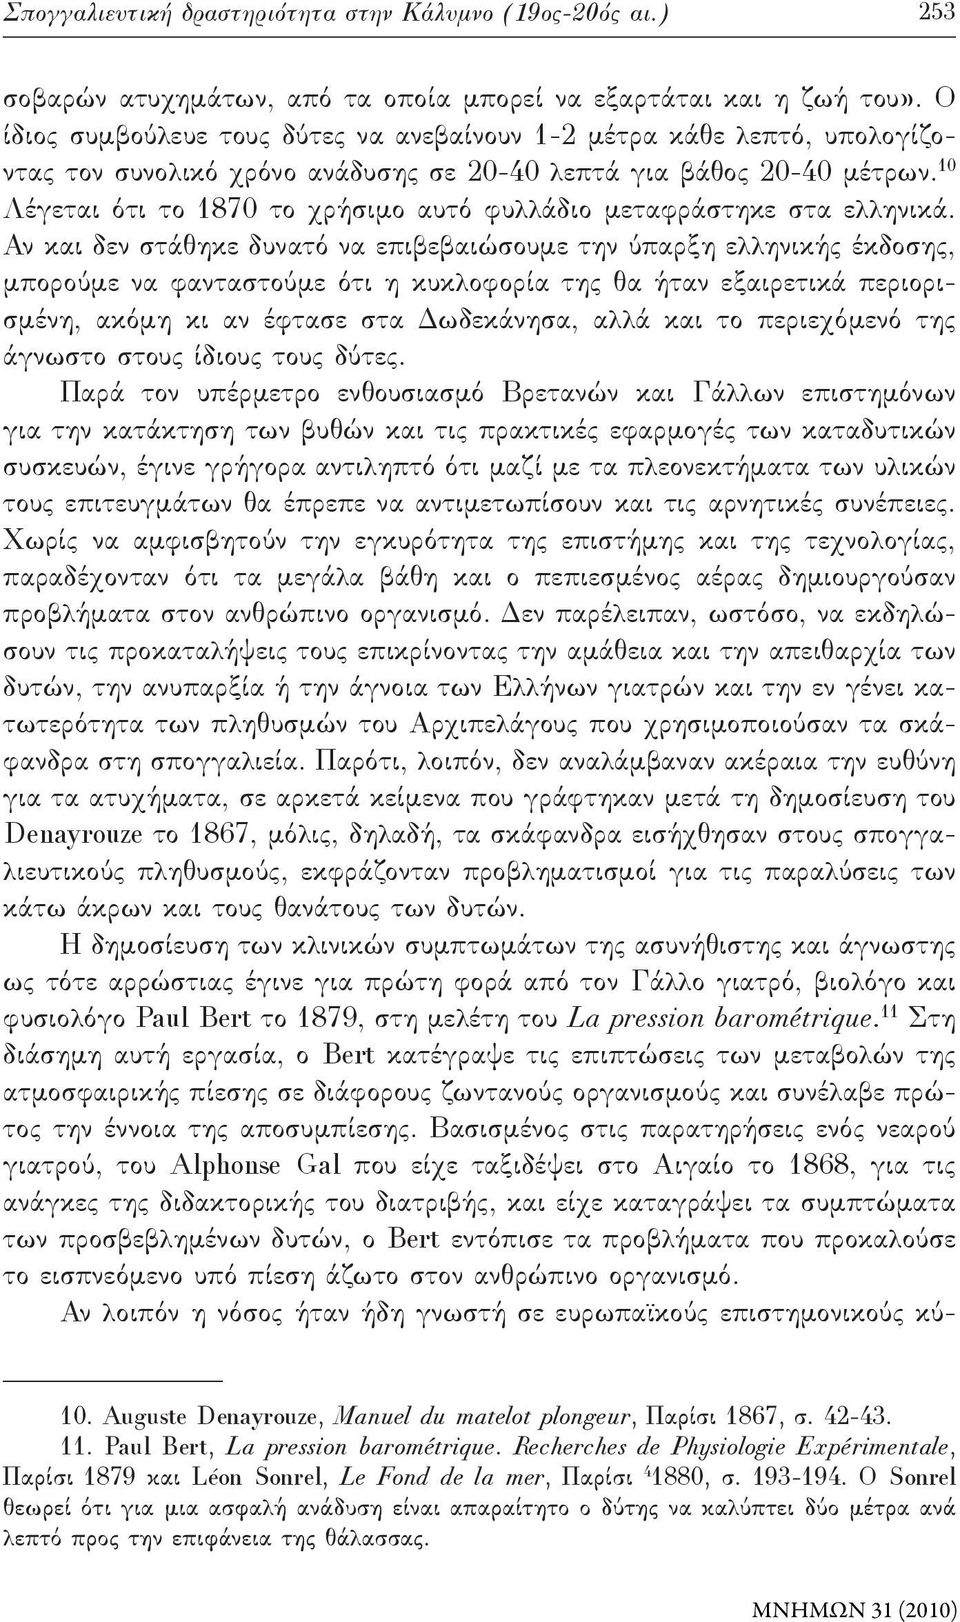 10 Λέγεται ότι το 1870 το χρήσιμο αυτό φυλλάδιο μεταφράστηκε στα ελληνικά.